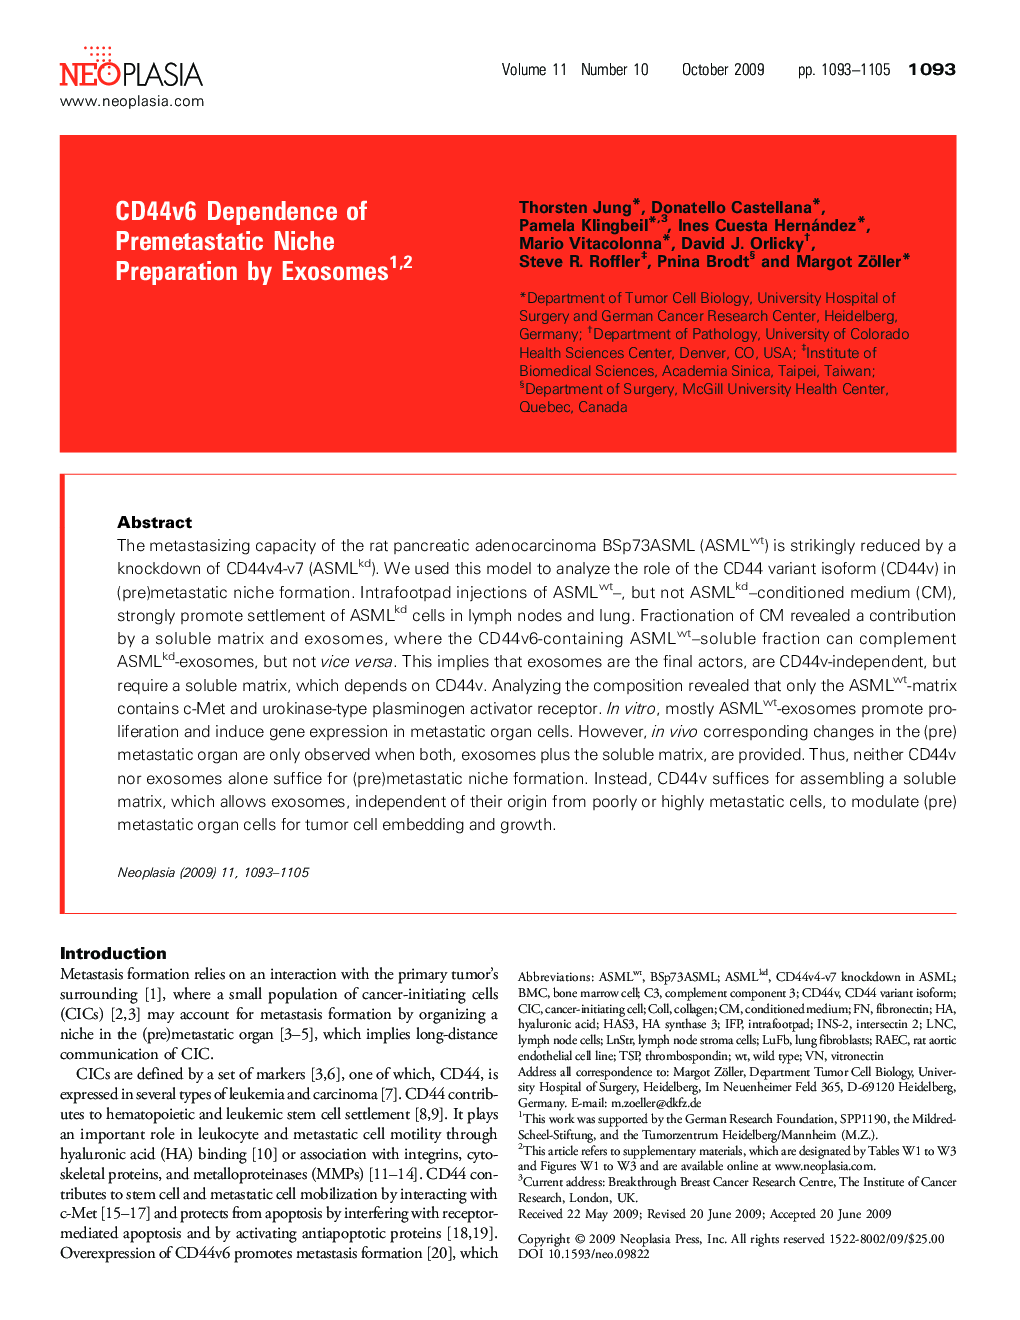 CD44v6 Dependence of Premetastatic Niche Preparation by Exosomes